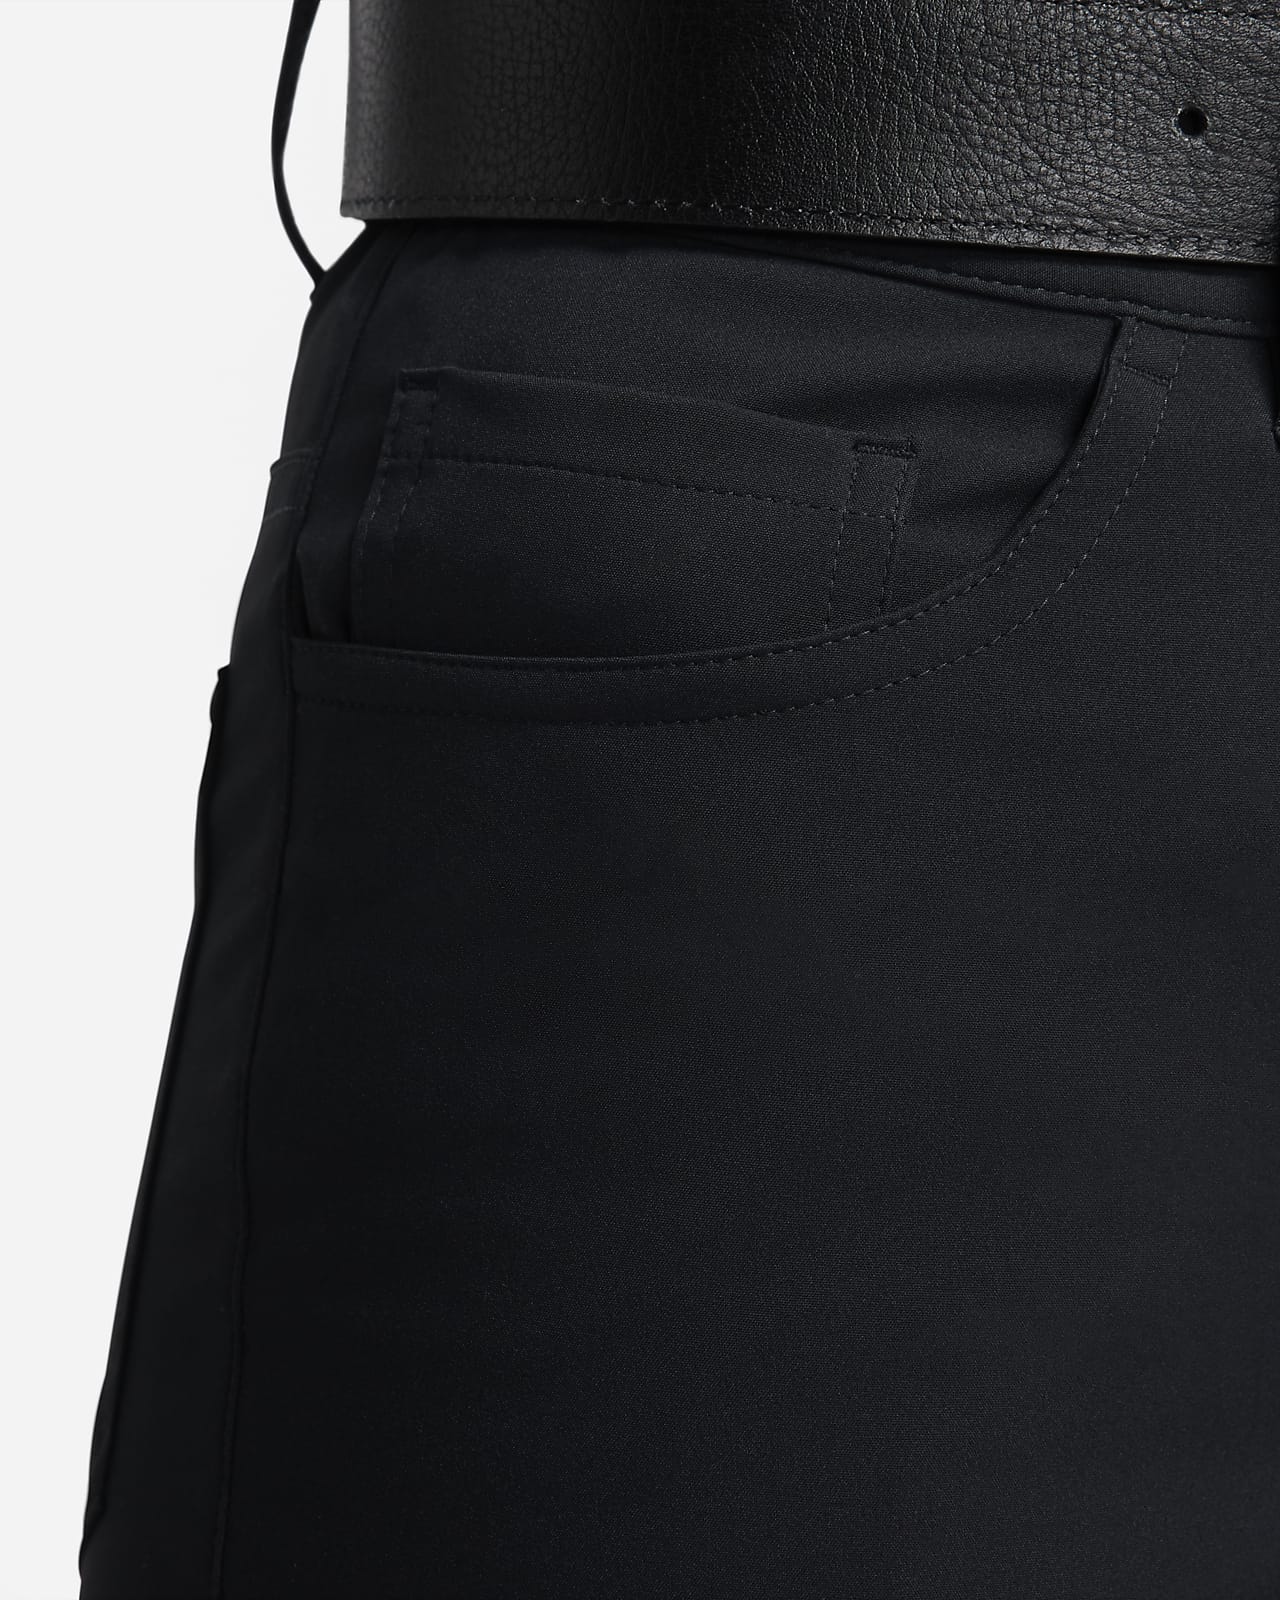 Nike Tour Repel Women's Slim-Fit Golf Pants